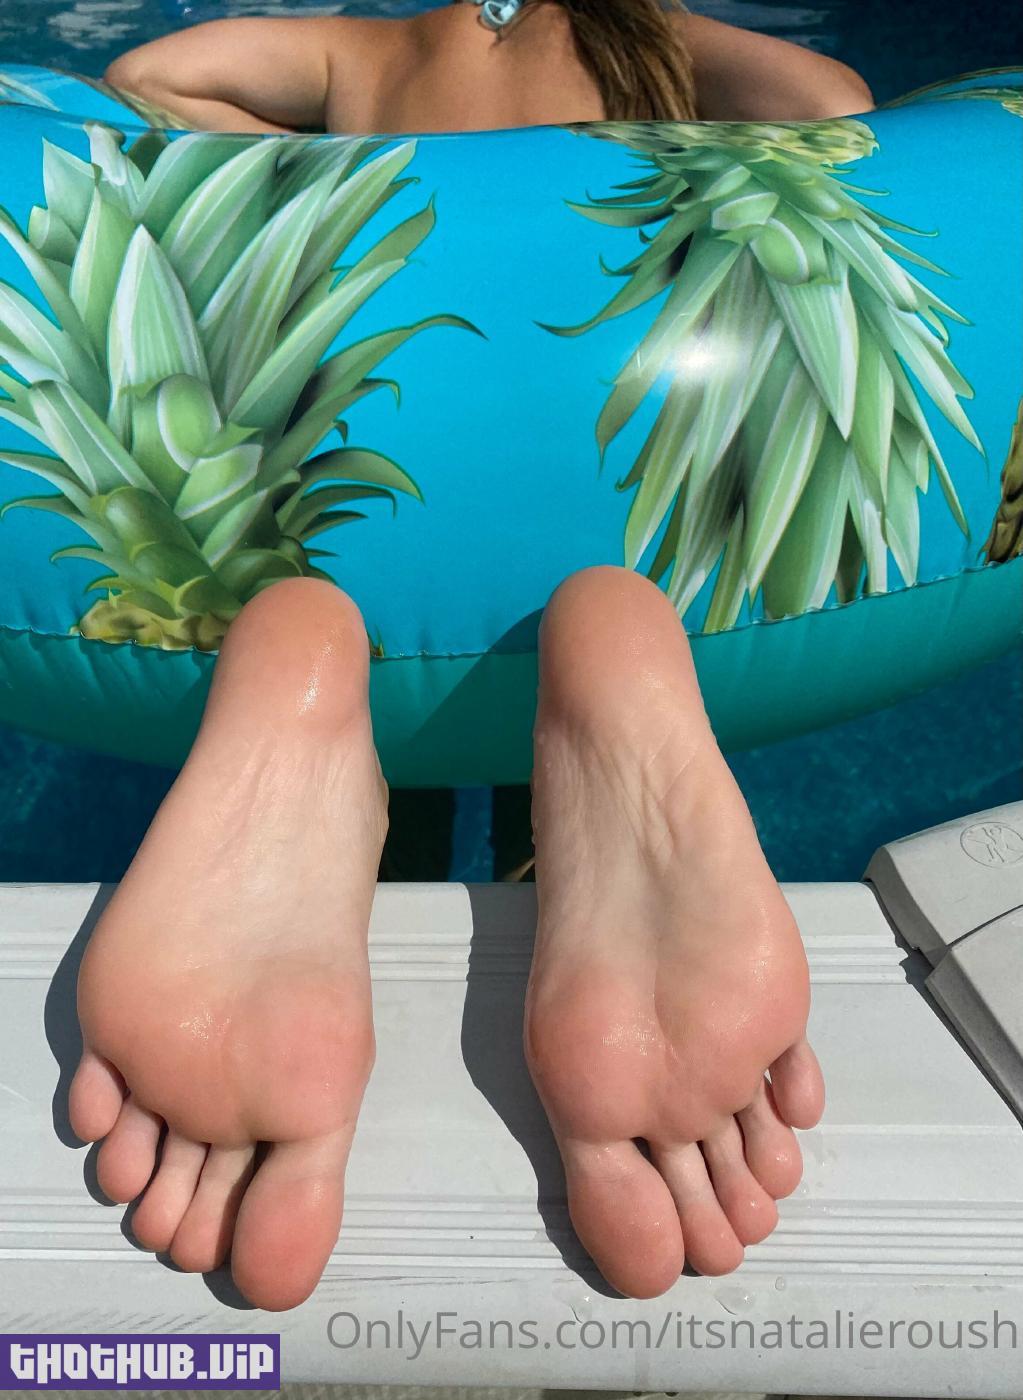 1662859568 171 Natalie Roush Wet Feet Onlyfans Set Leaked